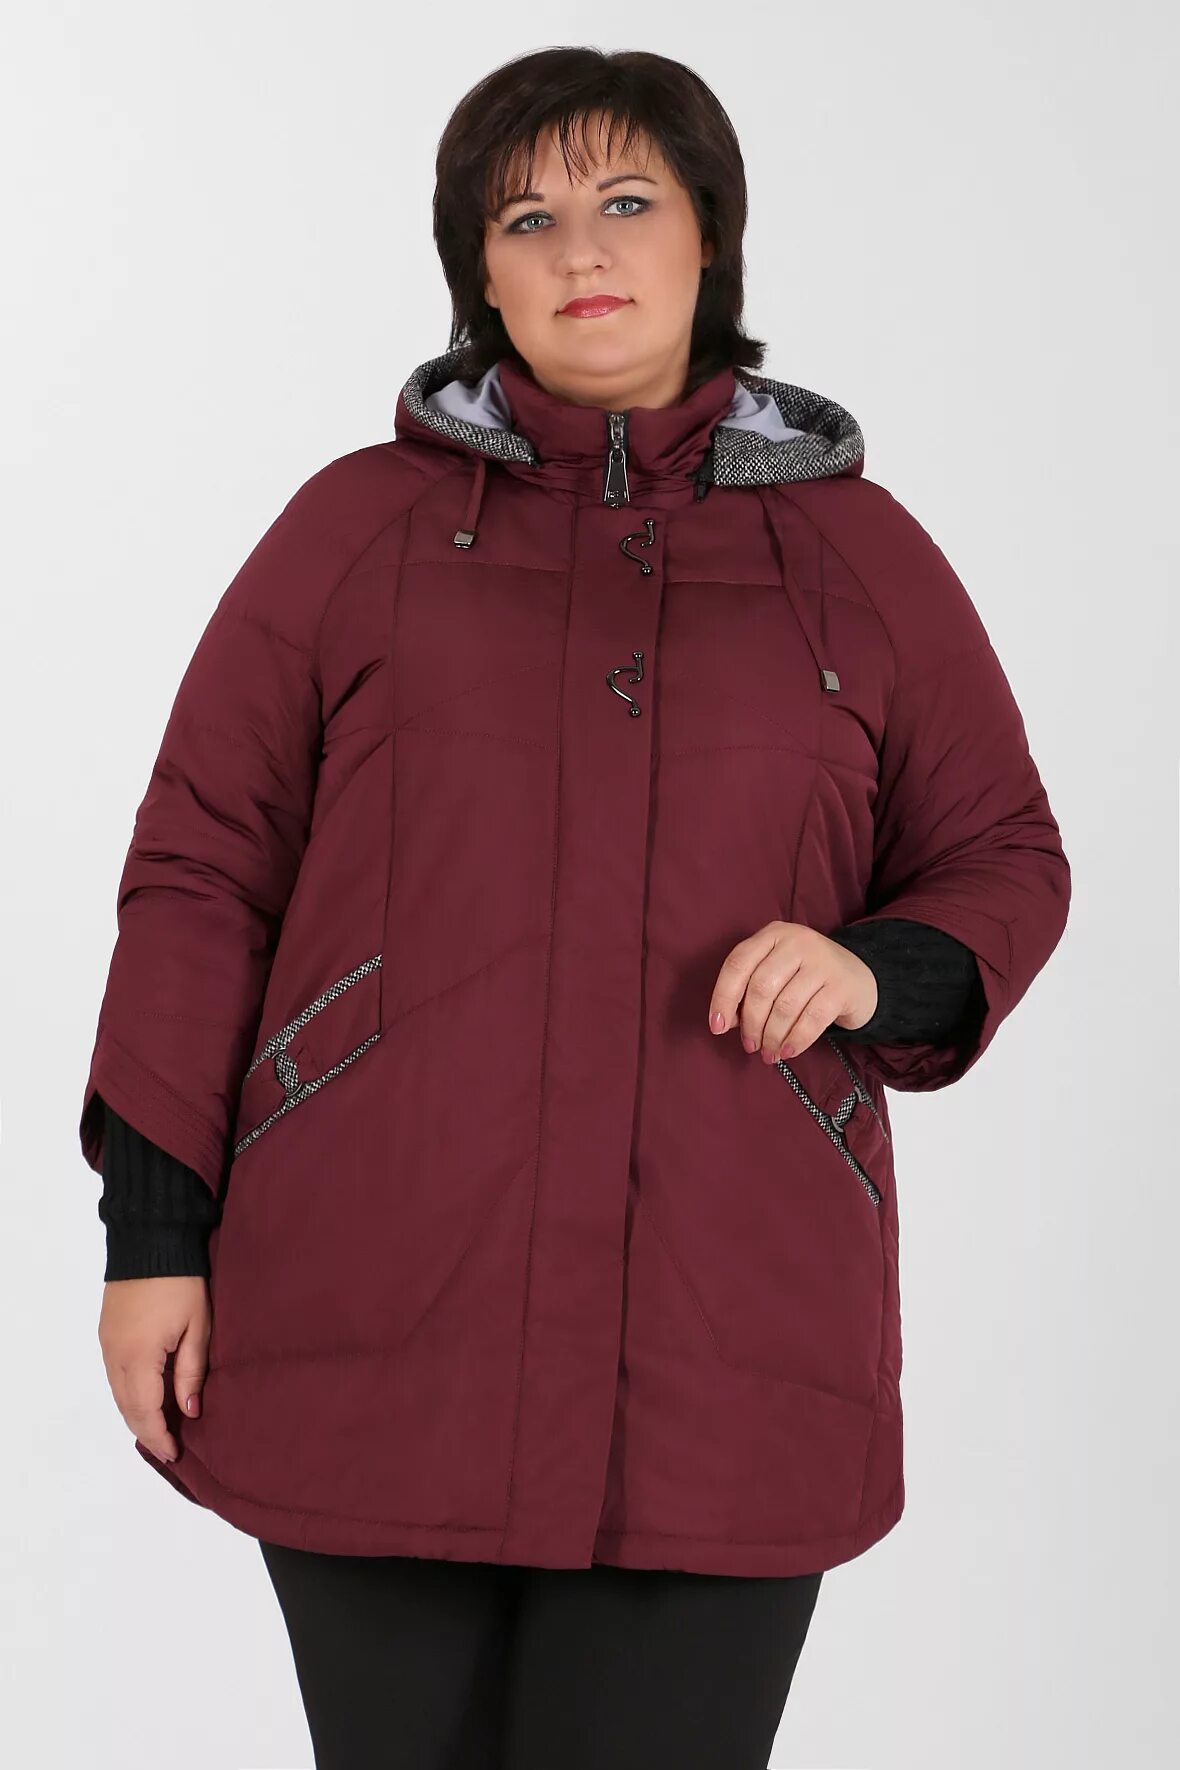 Женские куртки больших размеров купить на озоне